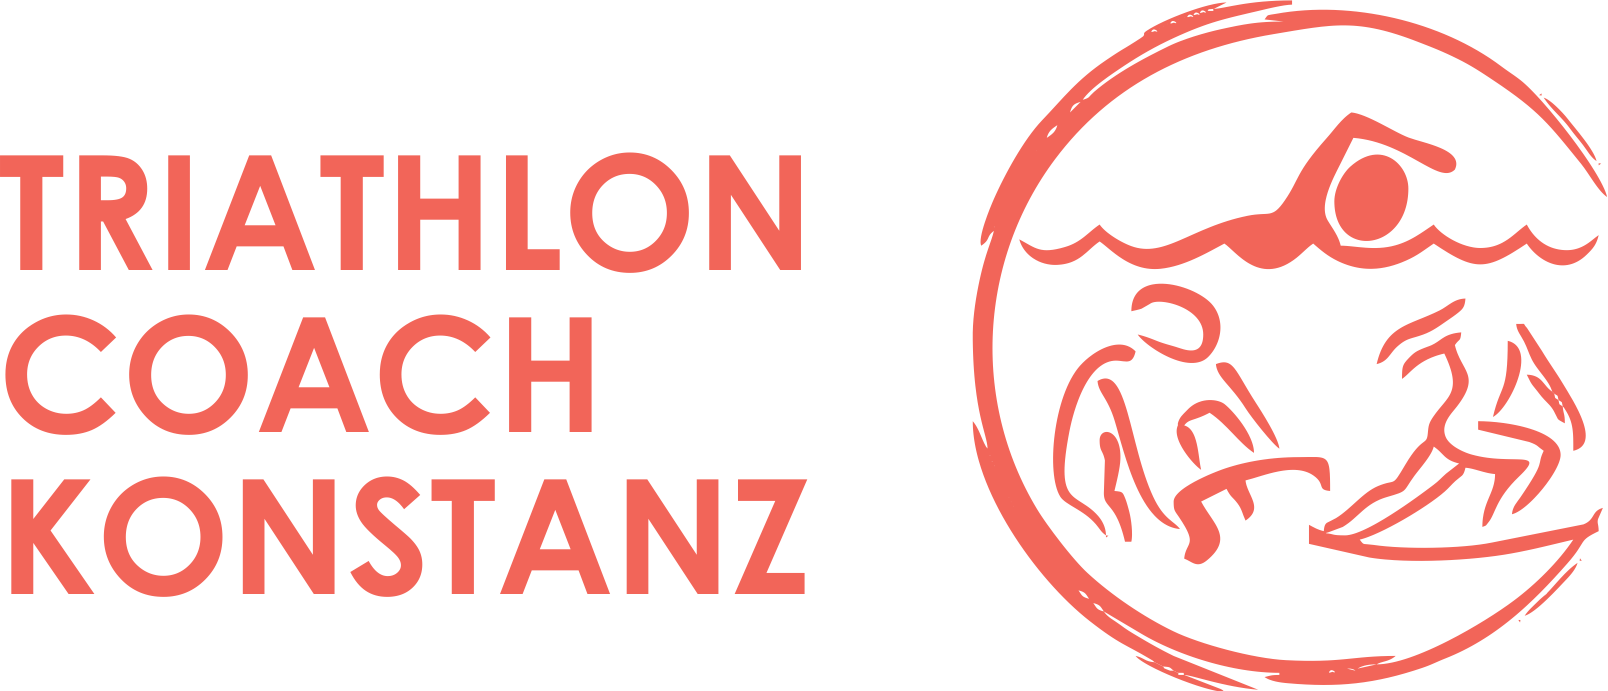 Triathlon Coach Konstanz